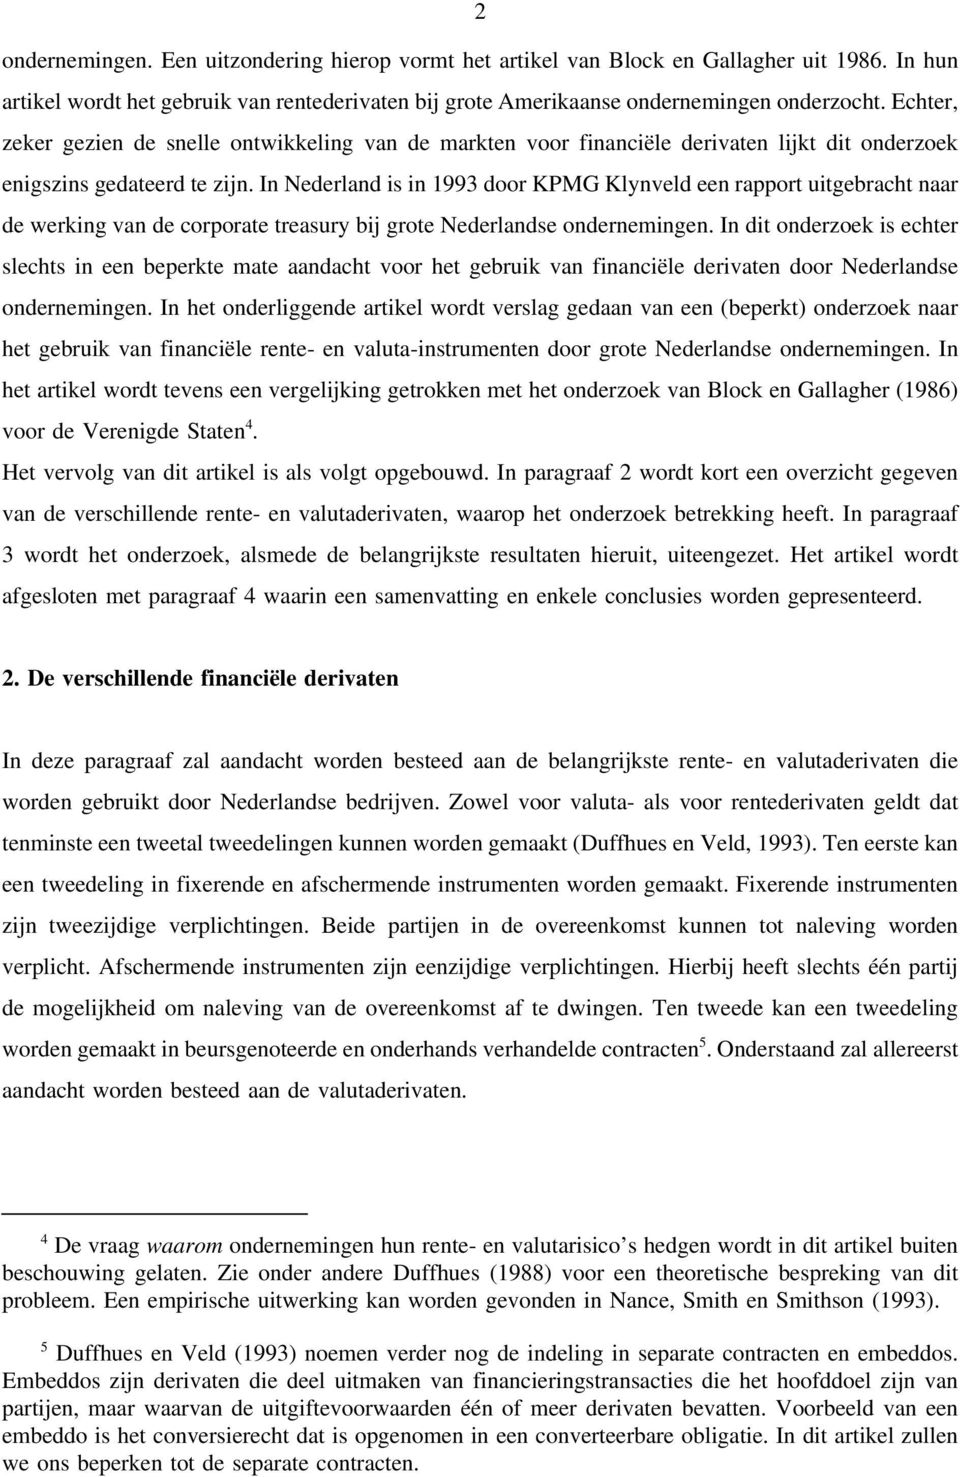 In Nederland is in 1993 door KPMG Klynveld een rapport uitgebracht naar de werking van de corporate treasury bij grote Nederlandse ondernemingen.